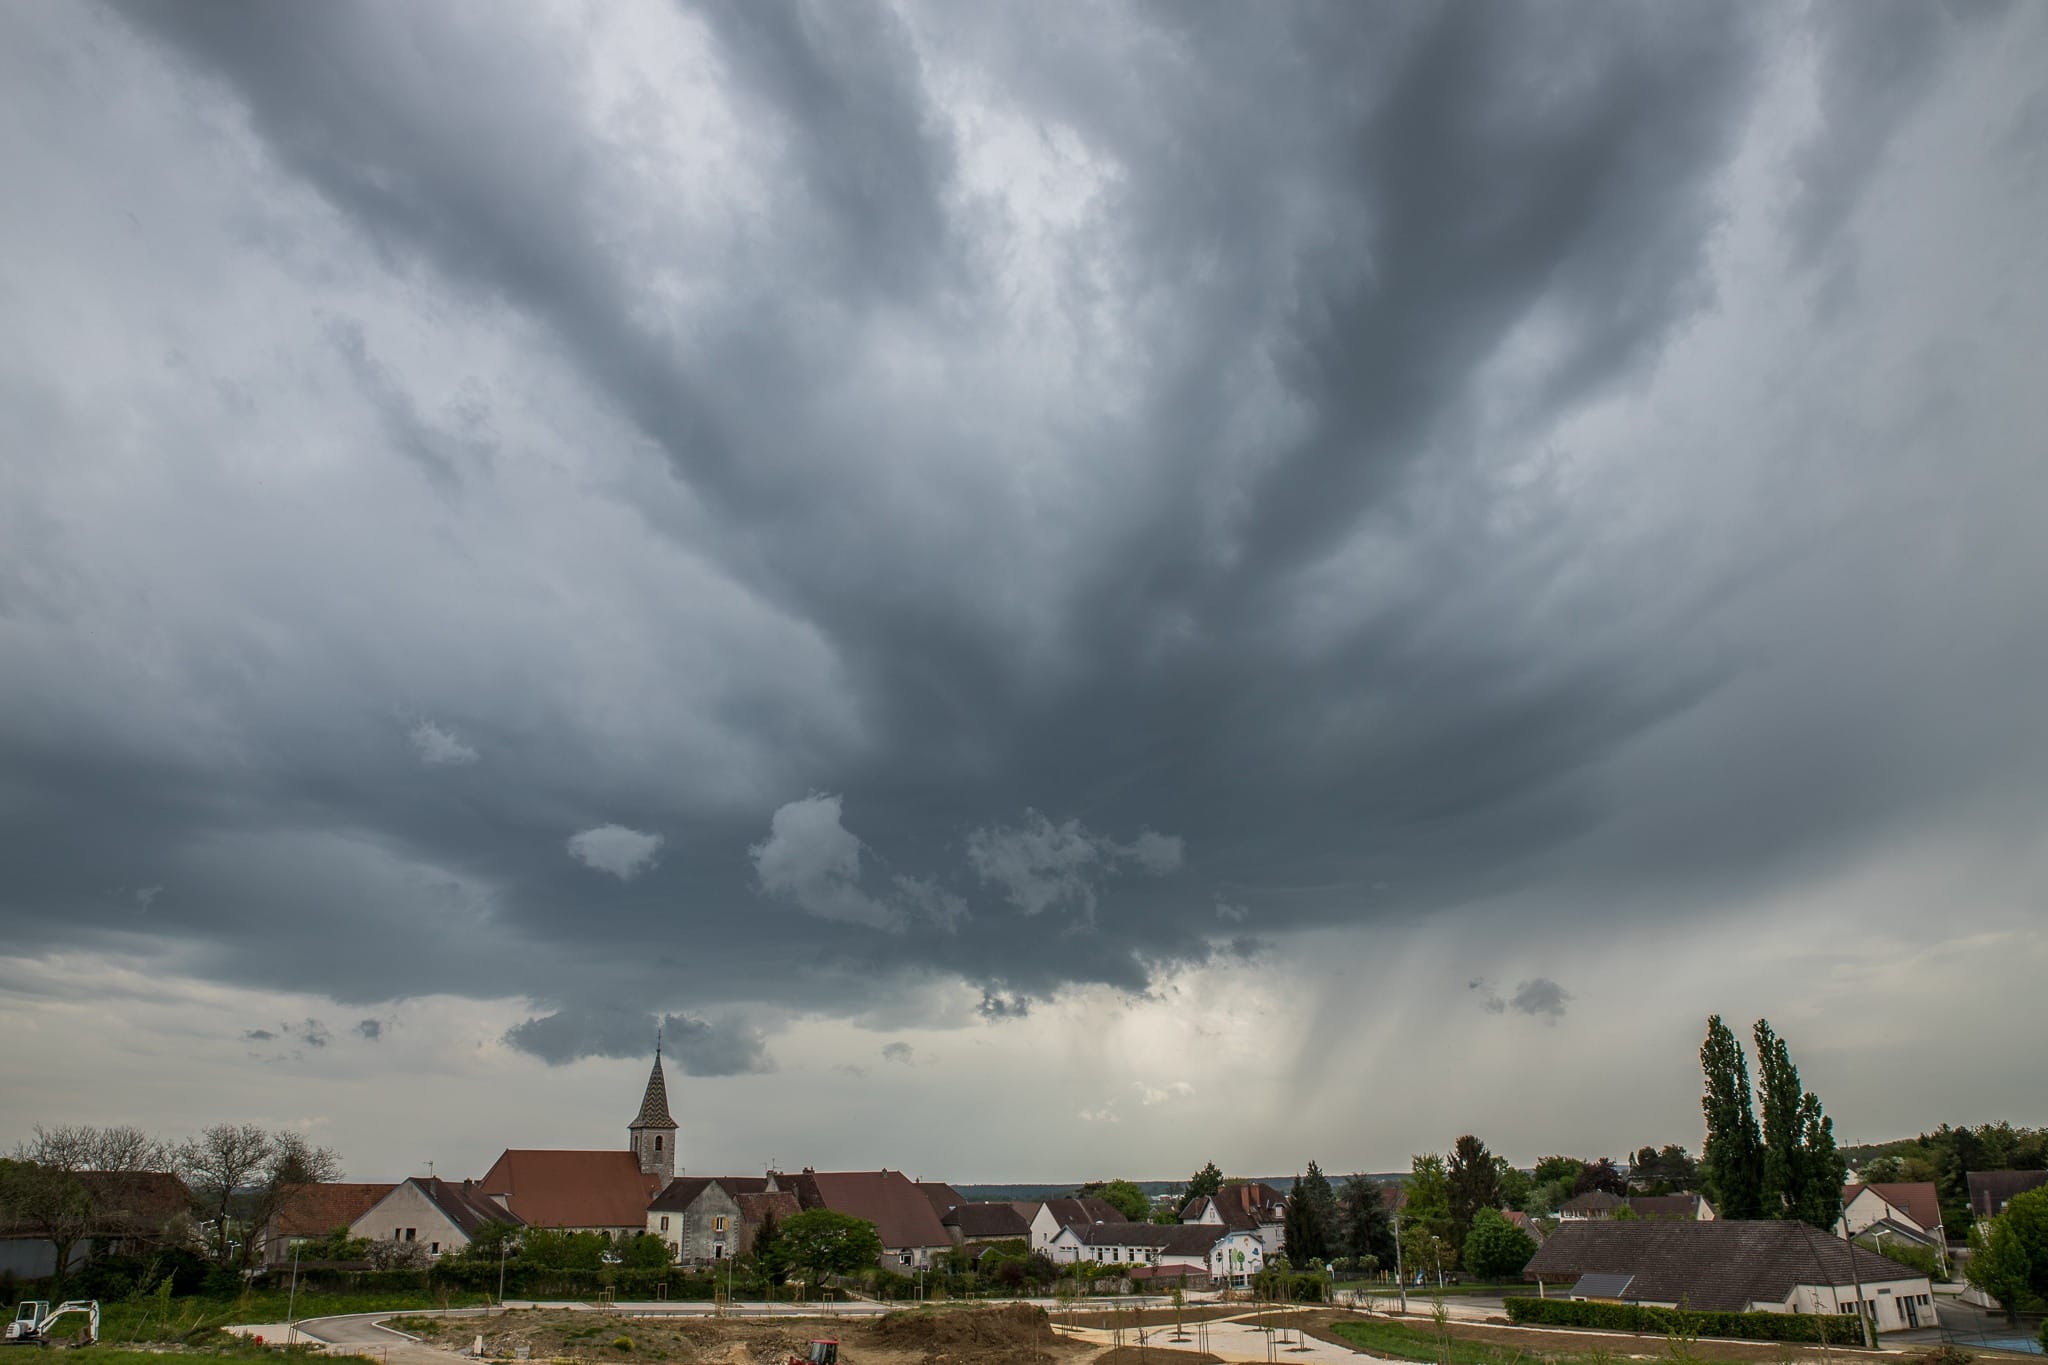 Base orageuse interceptée à Authume près de Dole à la mise en place des premières cellules orageuses dans le Jura. - 29/04/2018 16:05 - Yannick MOREY